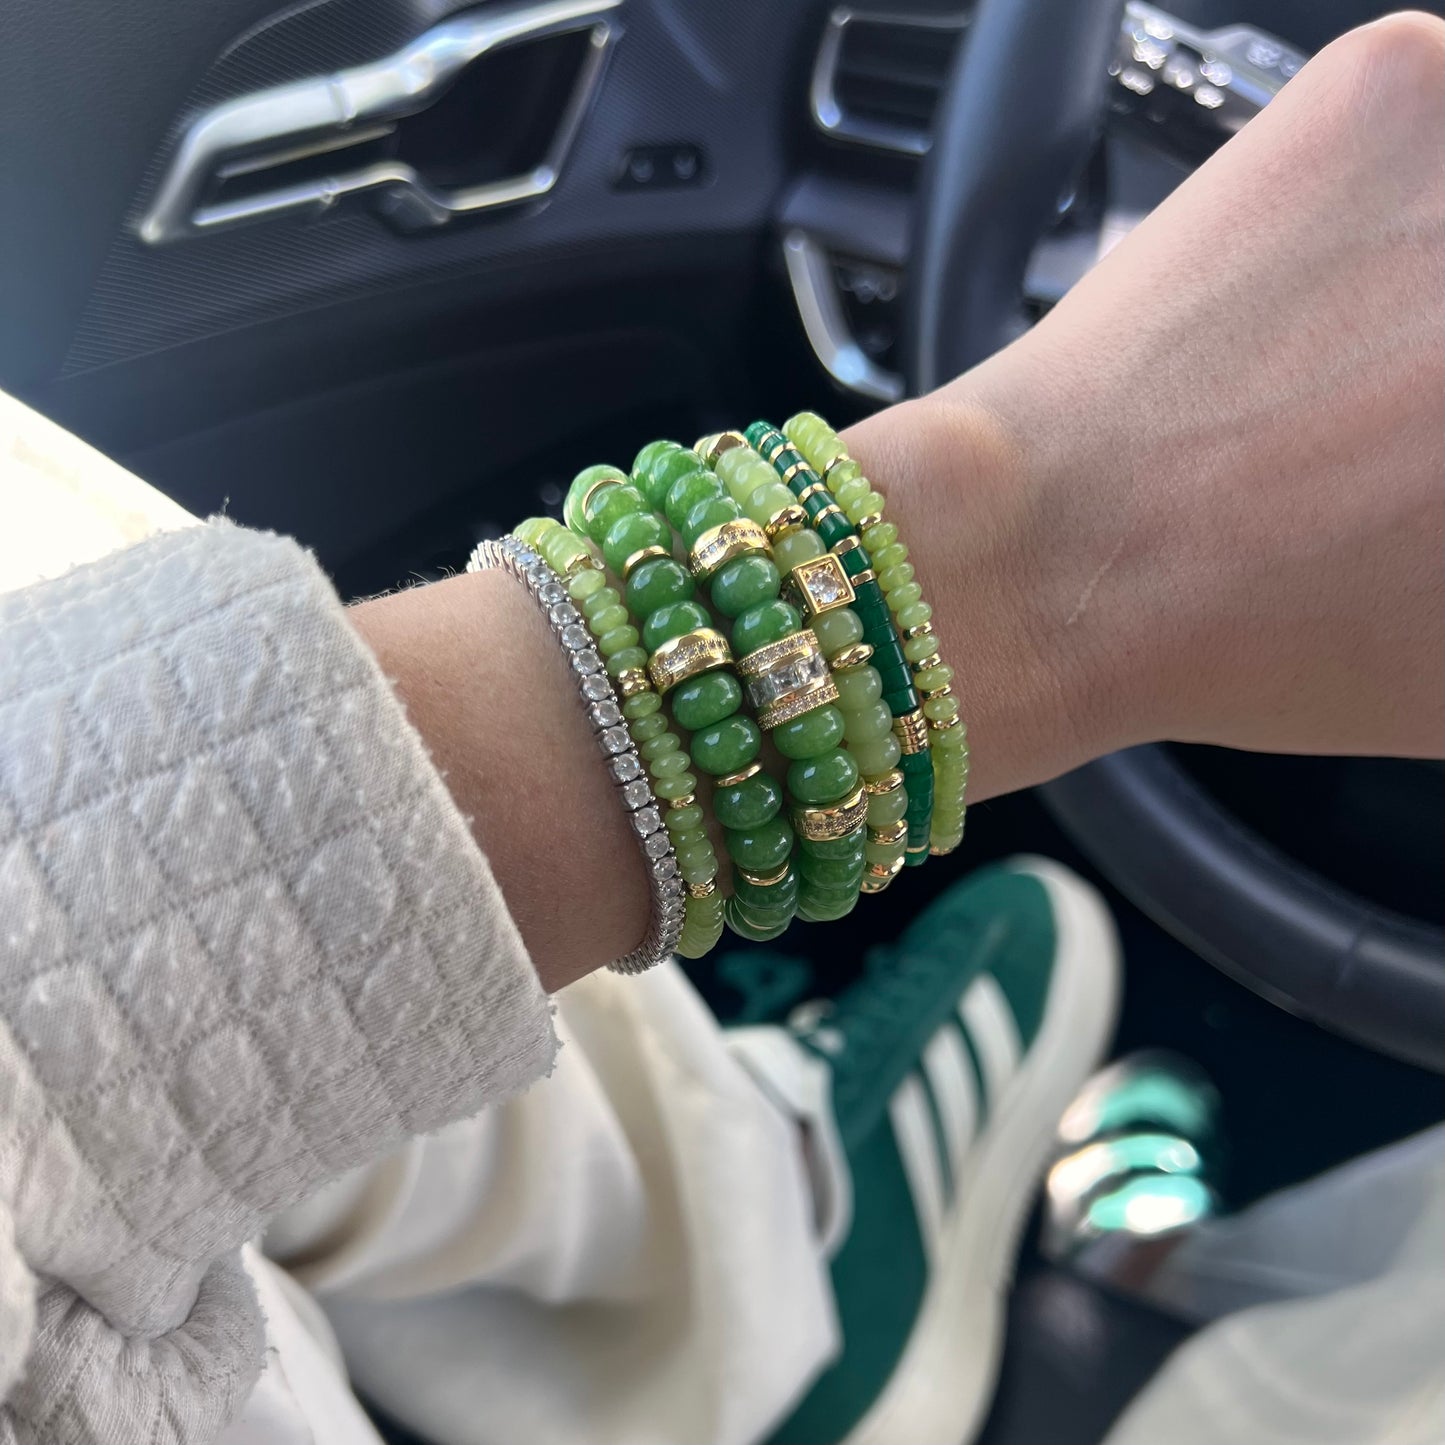 Vital bracelets